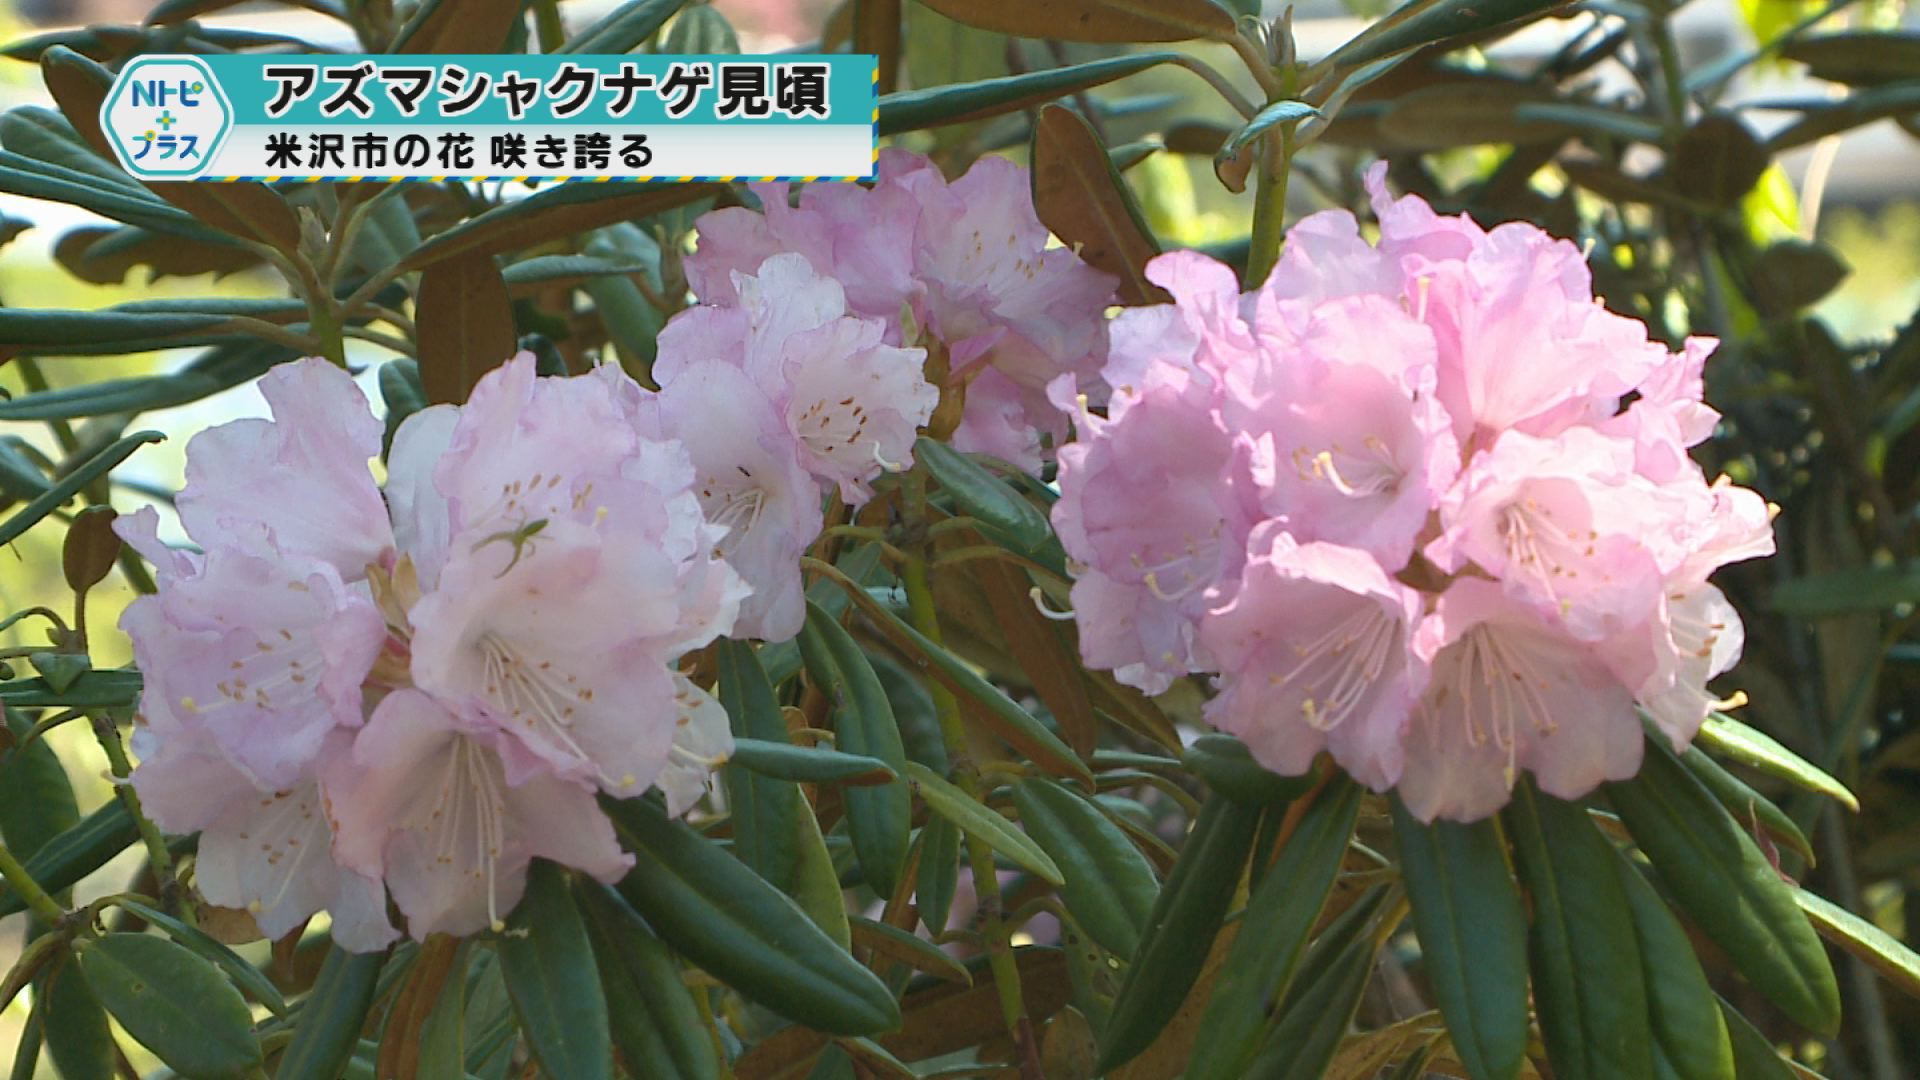 「アズマシャクナゲ見頃」米沢市の花咲き誇る